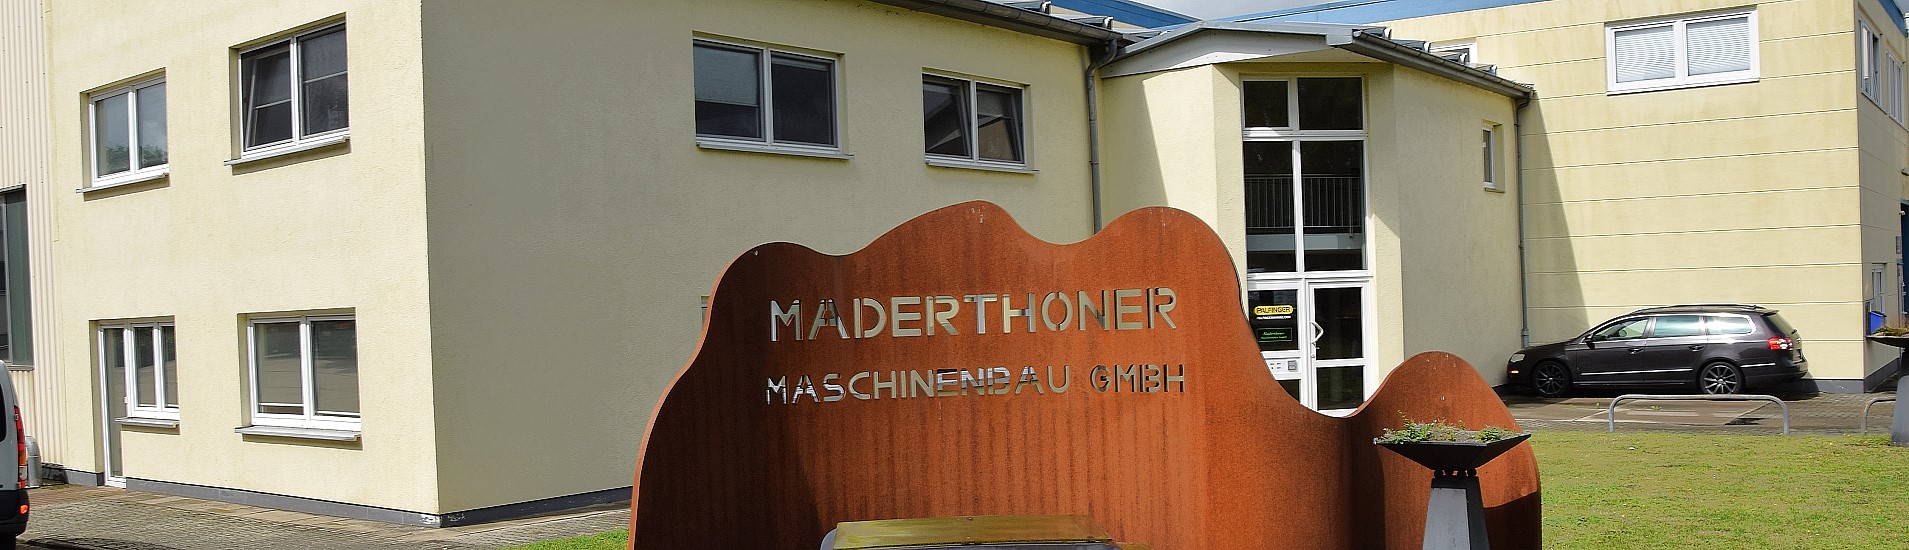 Maderthoner Maschinenbau - Contact